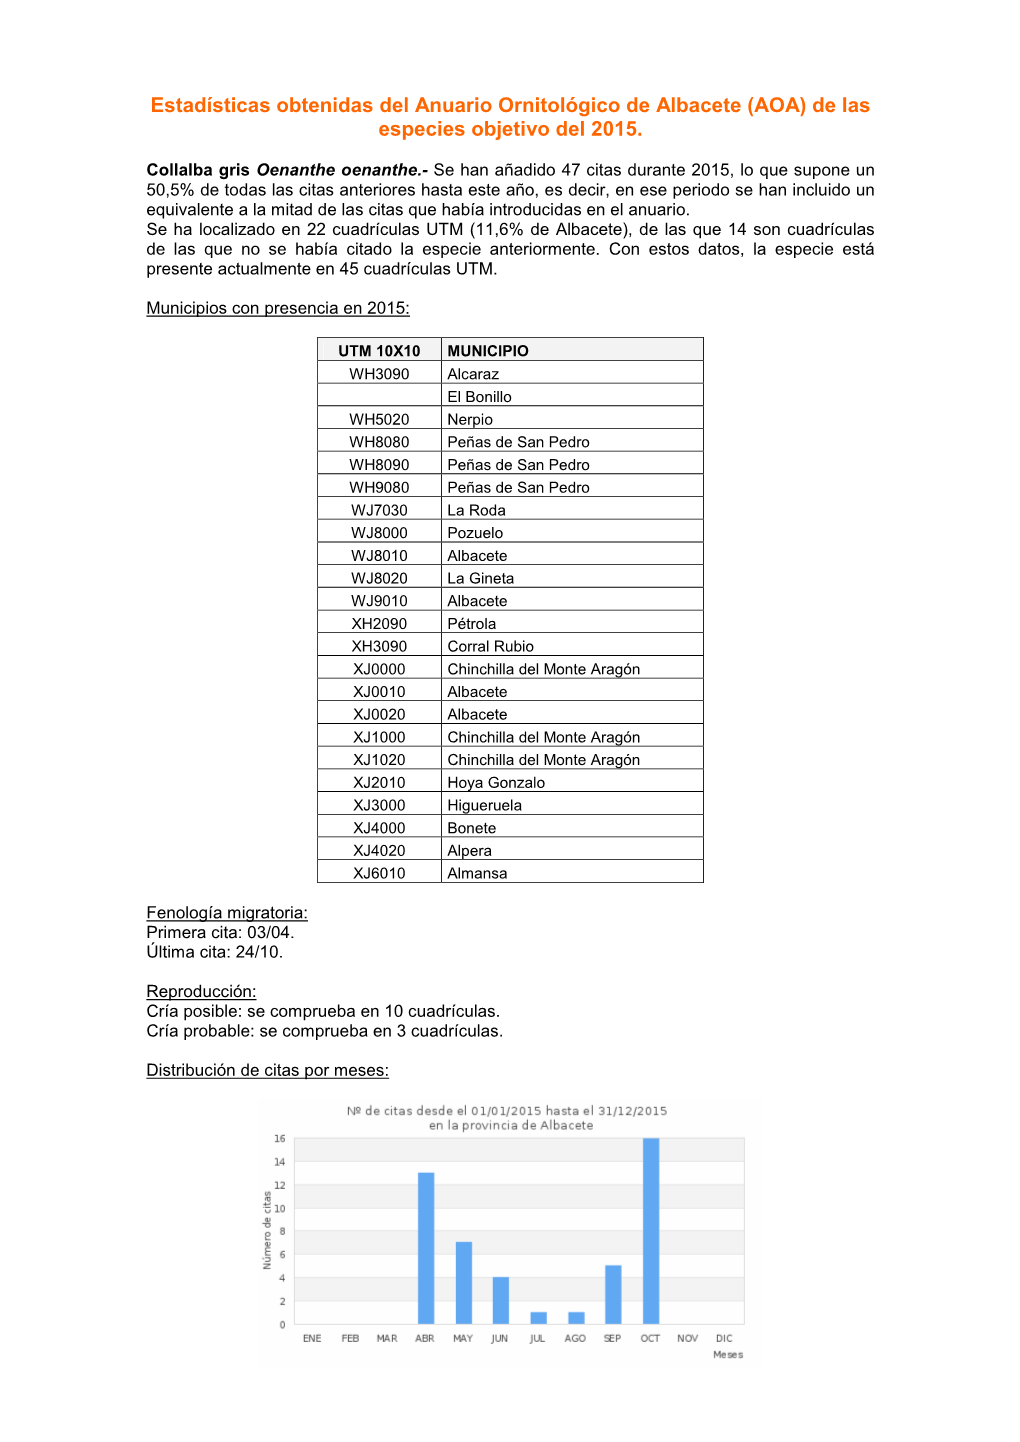 Estadísticas Obtenidas Del Anuario Ornitológico De Albacete (AOA) De Las Especies Objetivo Del 2015